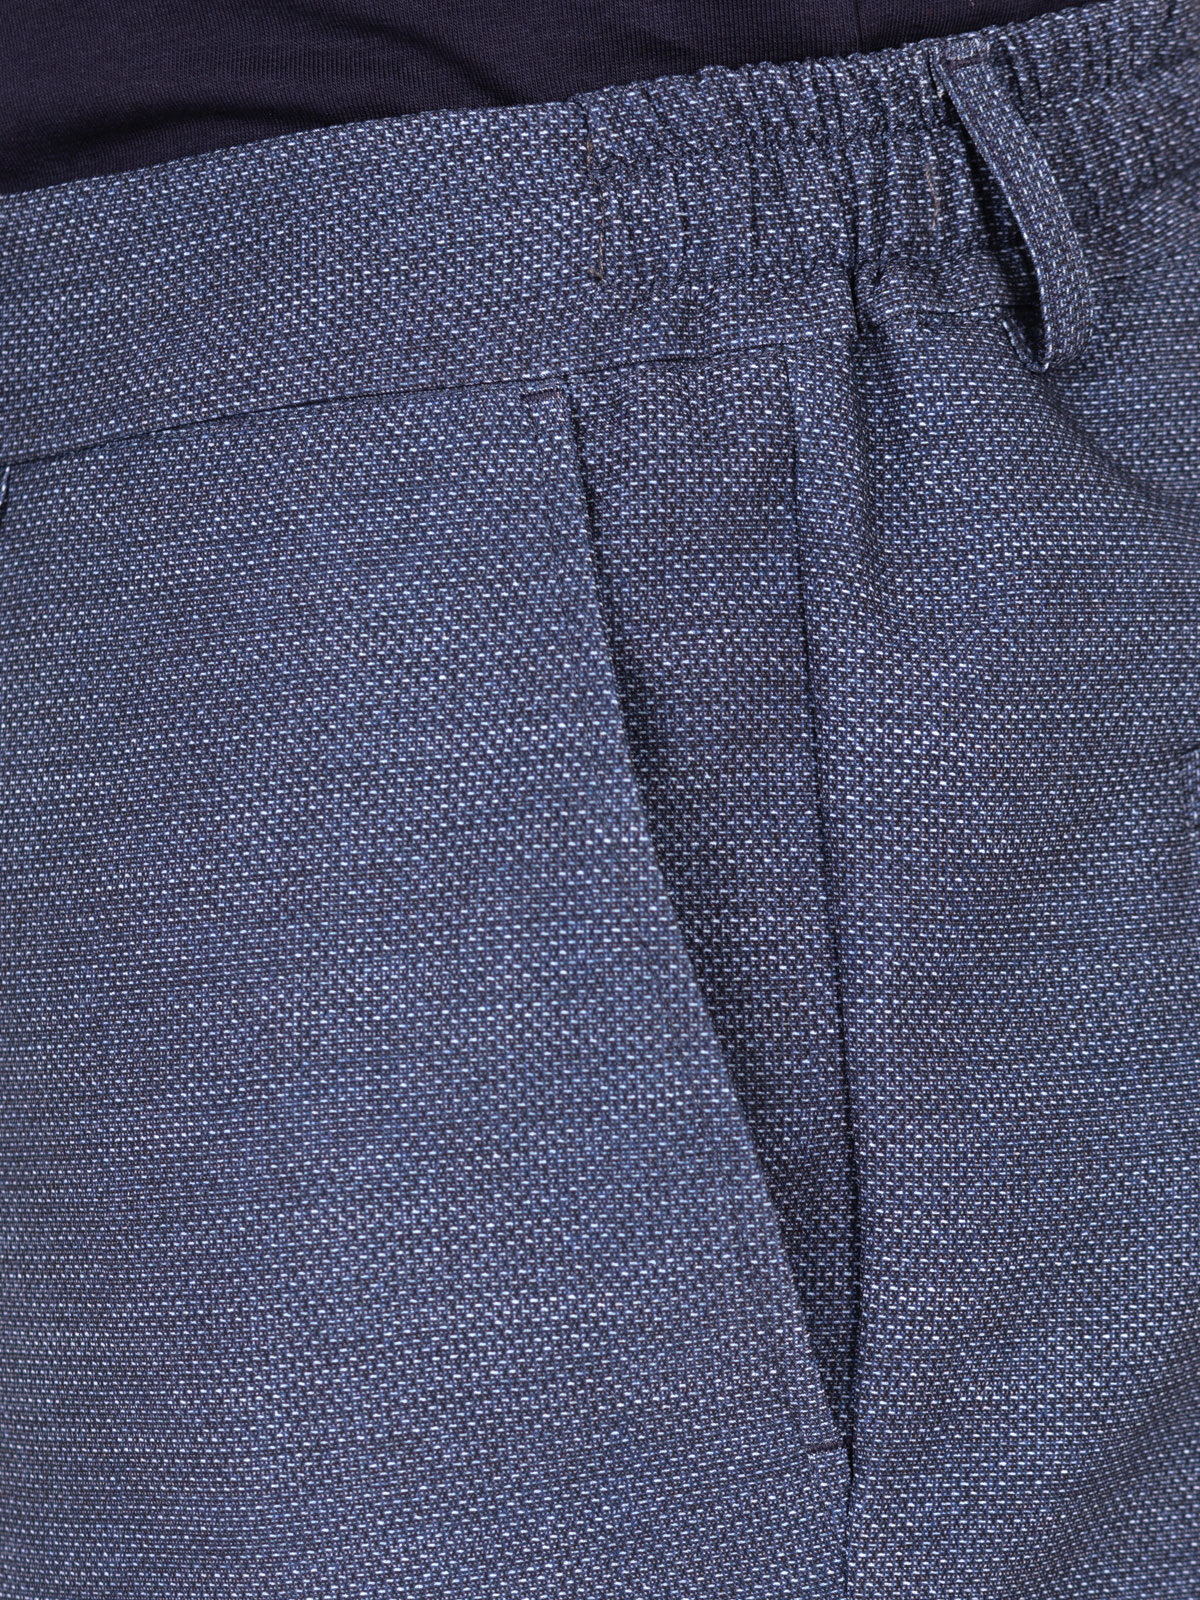 Спортен панталон тъмно син меланж - 29009 98.00 лв img4